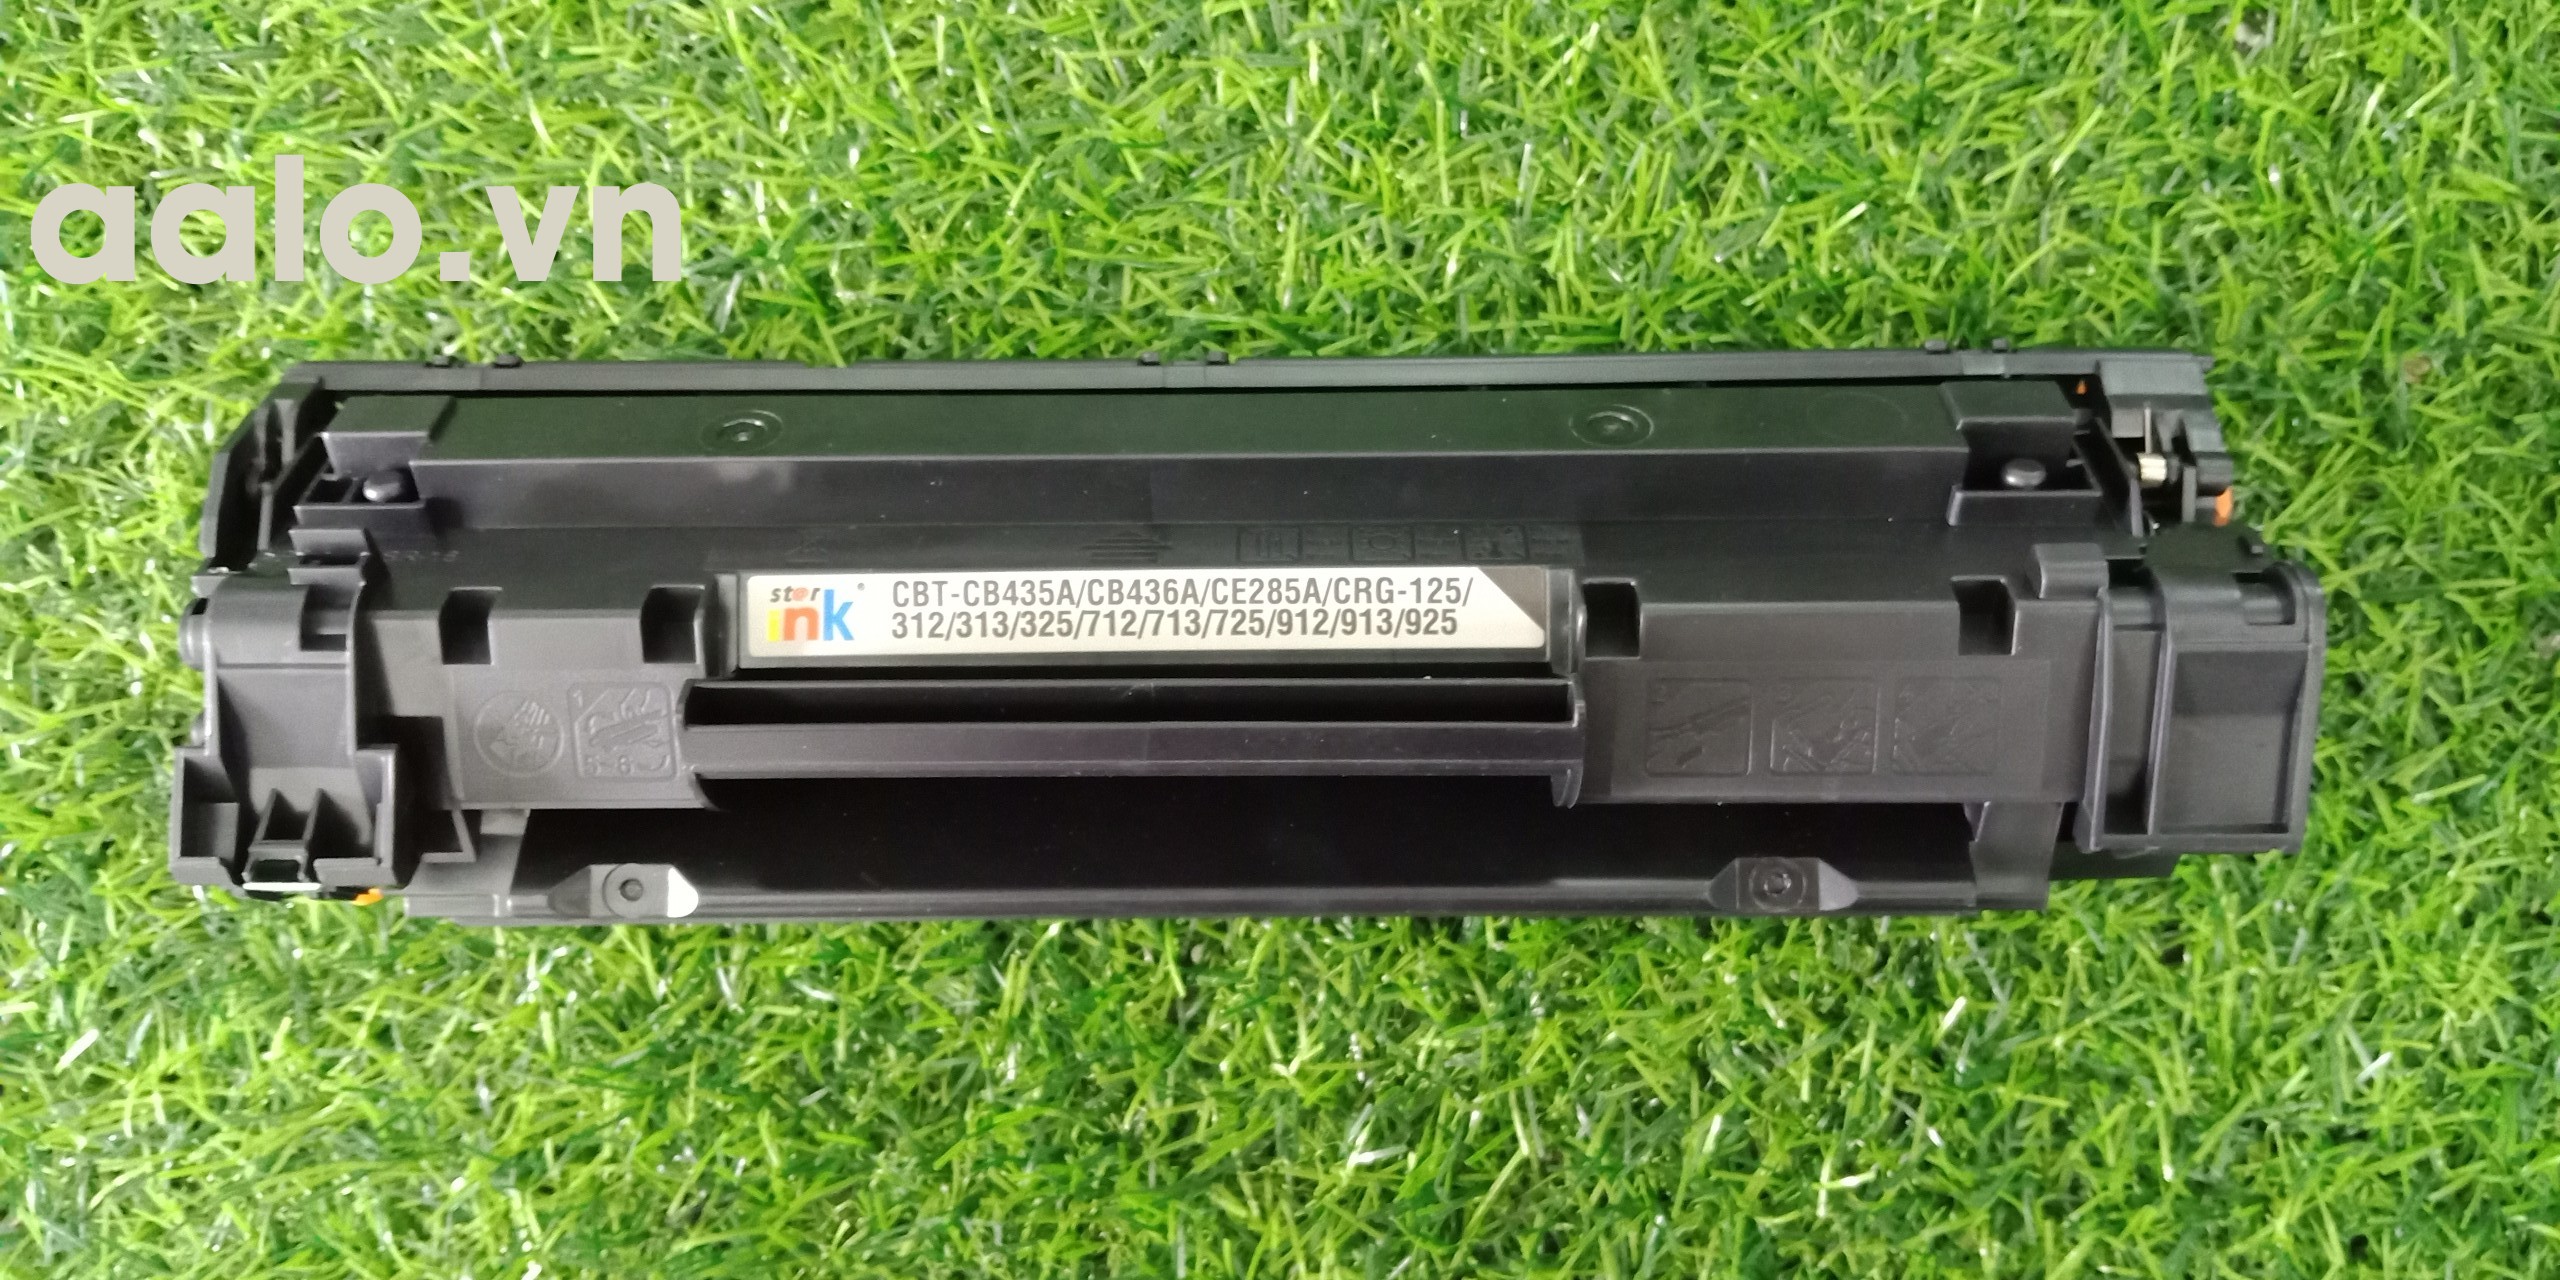 Hộp mực máy in HP CP1505N Cartridge 36A